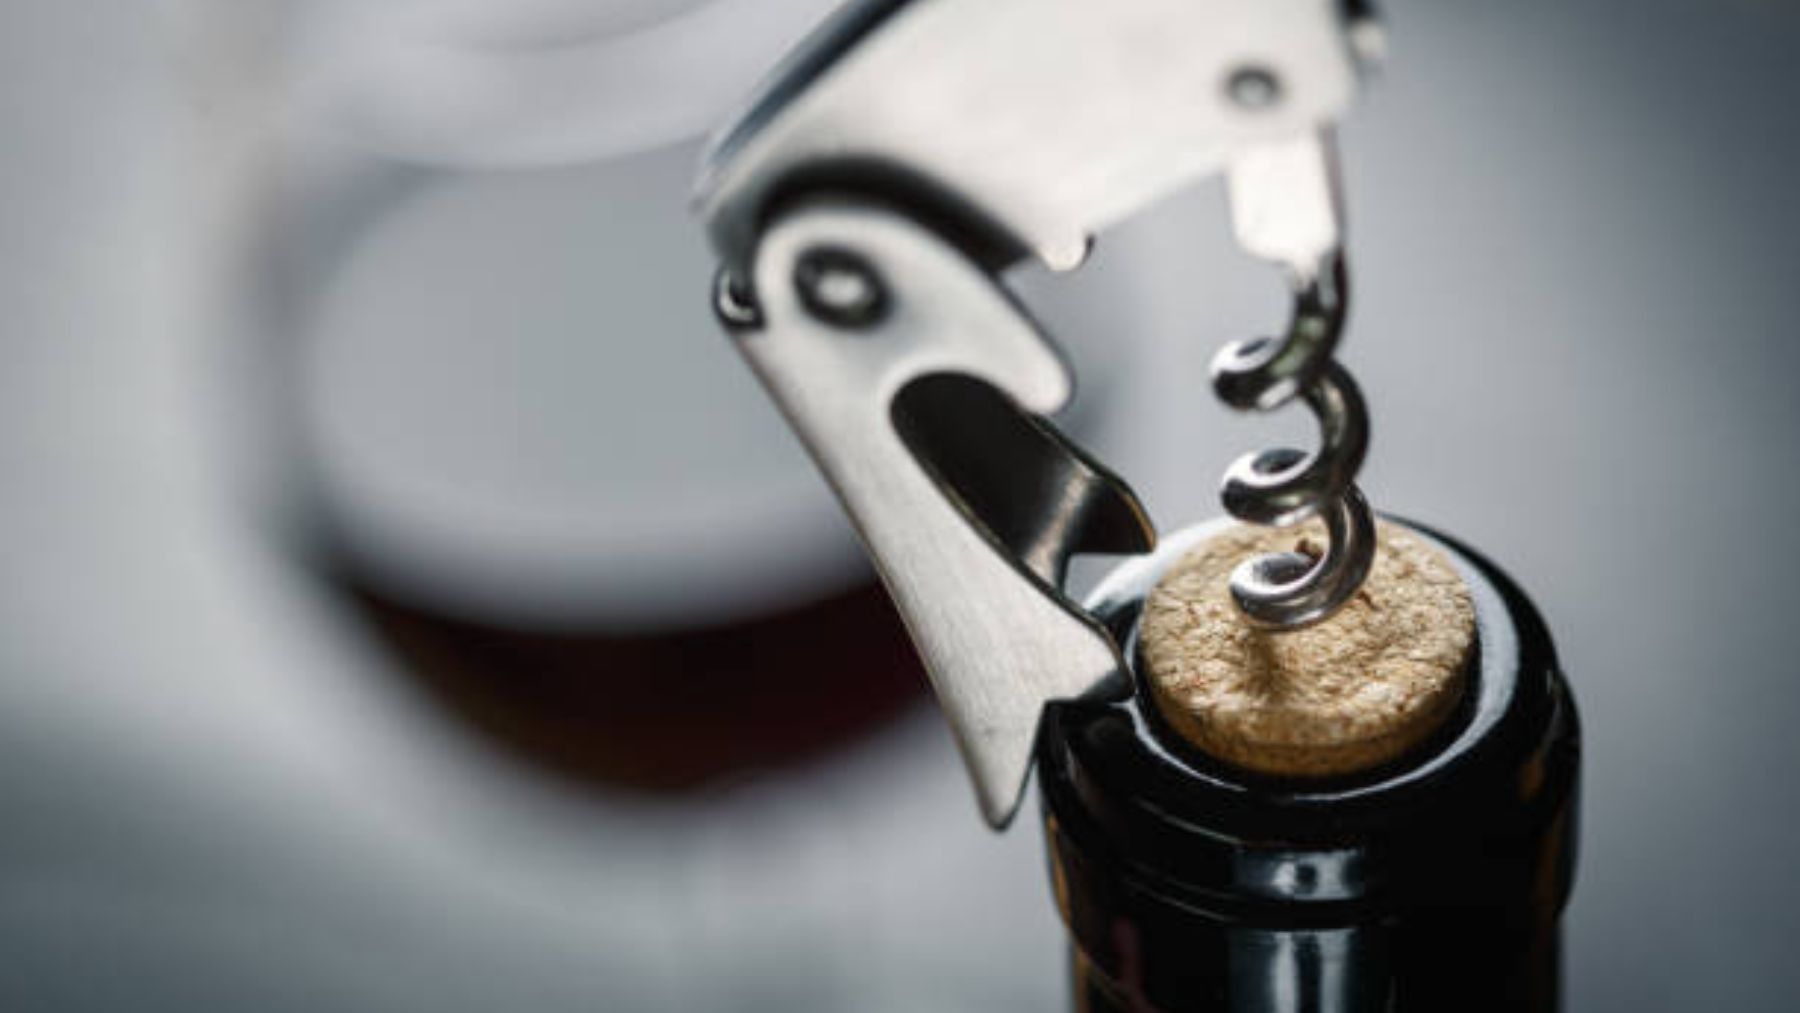 Descubre el truco para abrir botellas de vino que puede ser un peligro